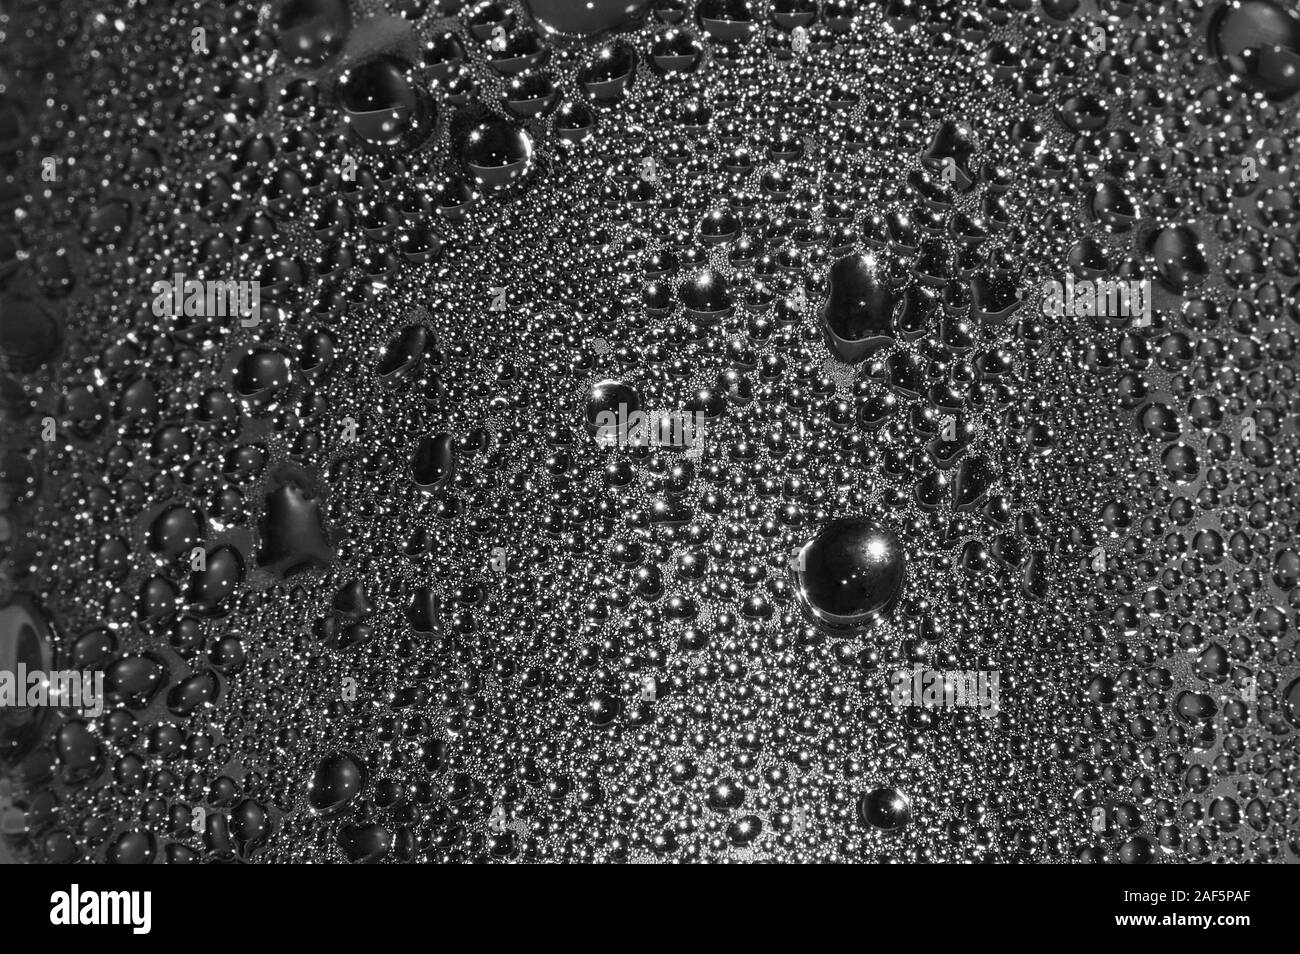 Natürliche Dunkelheit silbrig schwarzes Wasser Tautropfen Textur Makro Hintergrund, horizontal strukturierten nass Dampfblase Spritzer pattern copy Space, silber glänzend Stockfoto